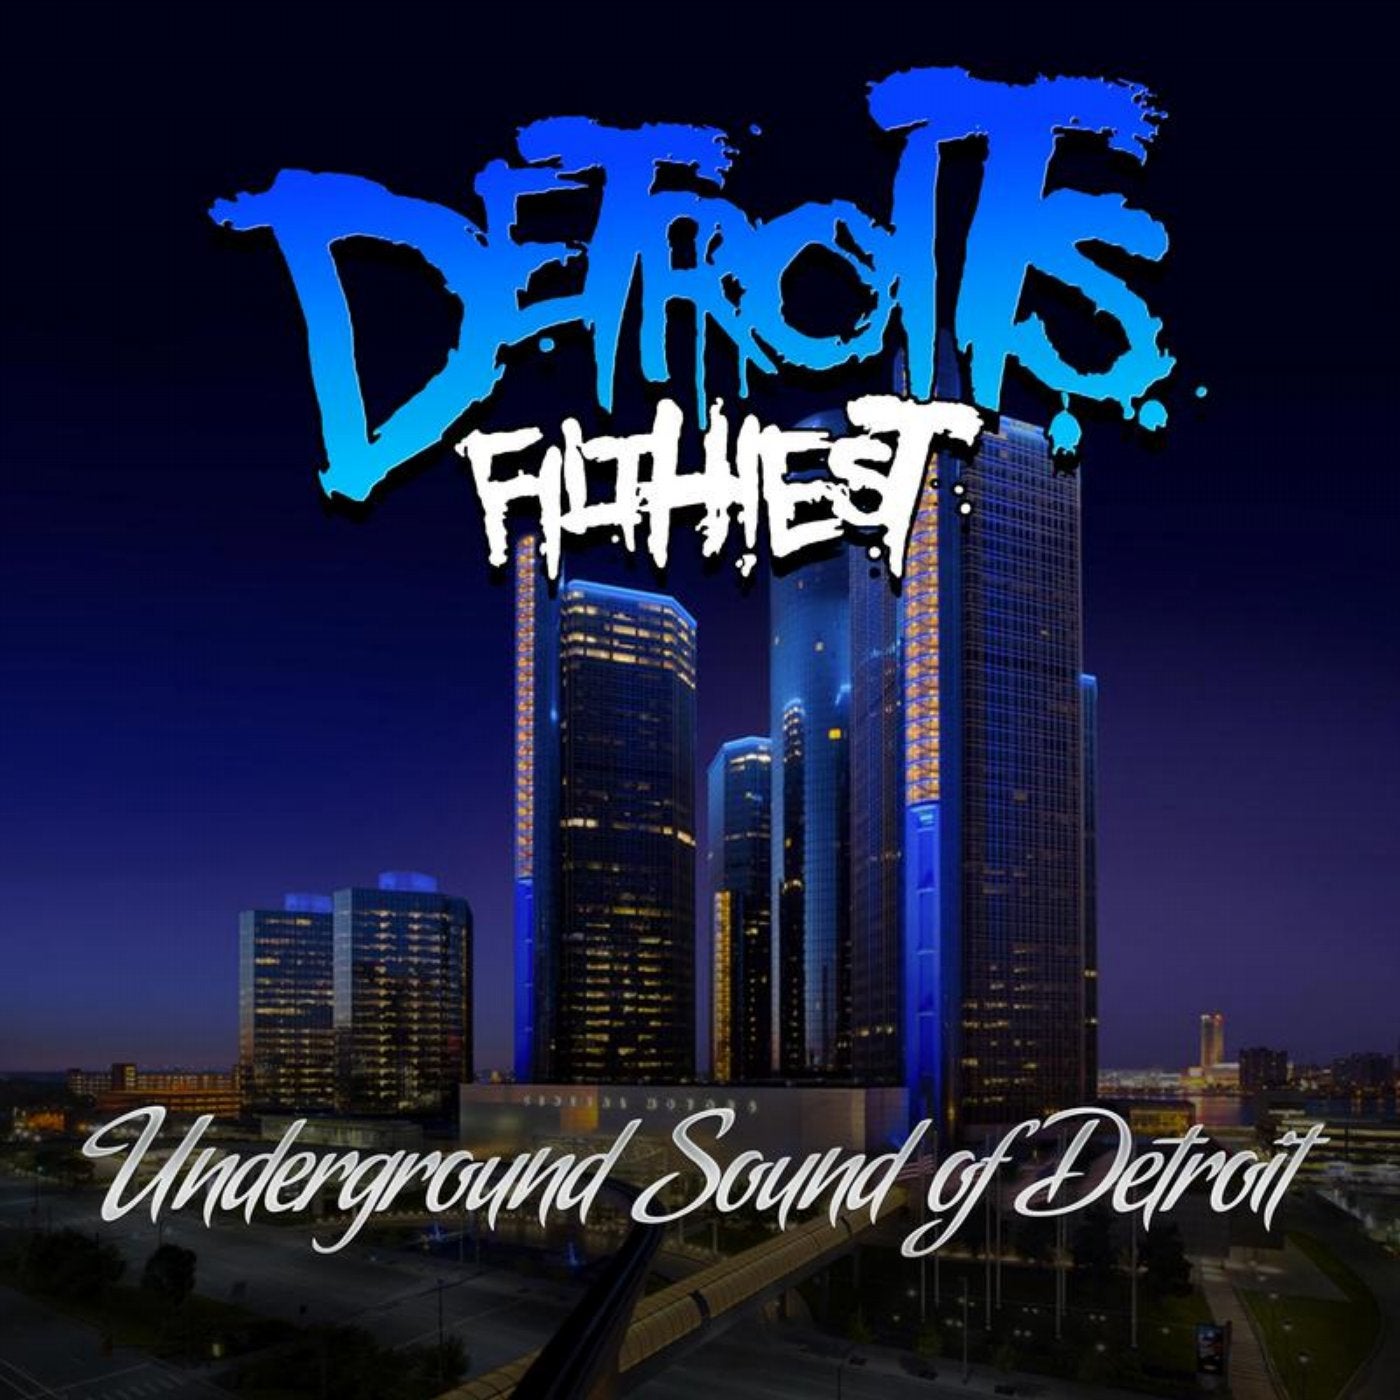 Underground Sound of Detroit